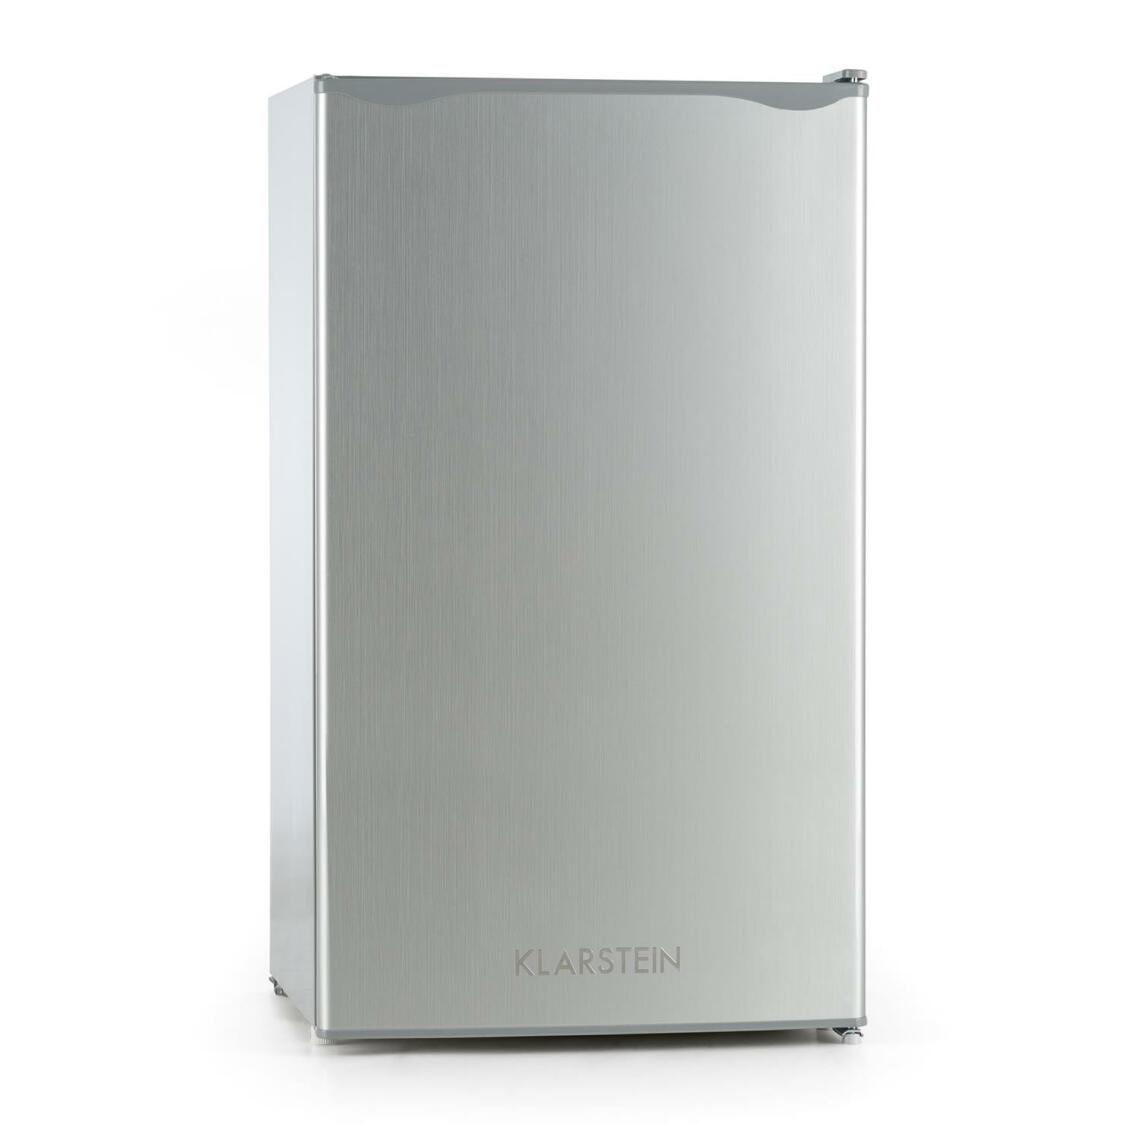 Klarstein - Réfrigérateur congélateur - Klarstein - 90 litres - 2 zones de refroidissement - Gris - Réfrigérateur